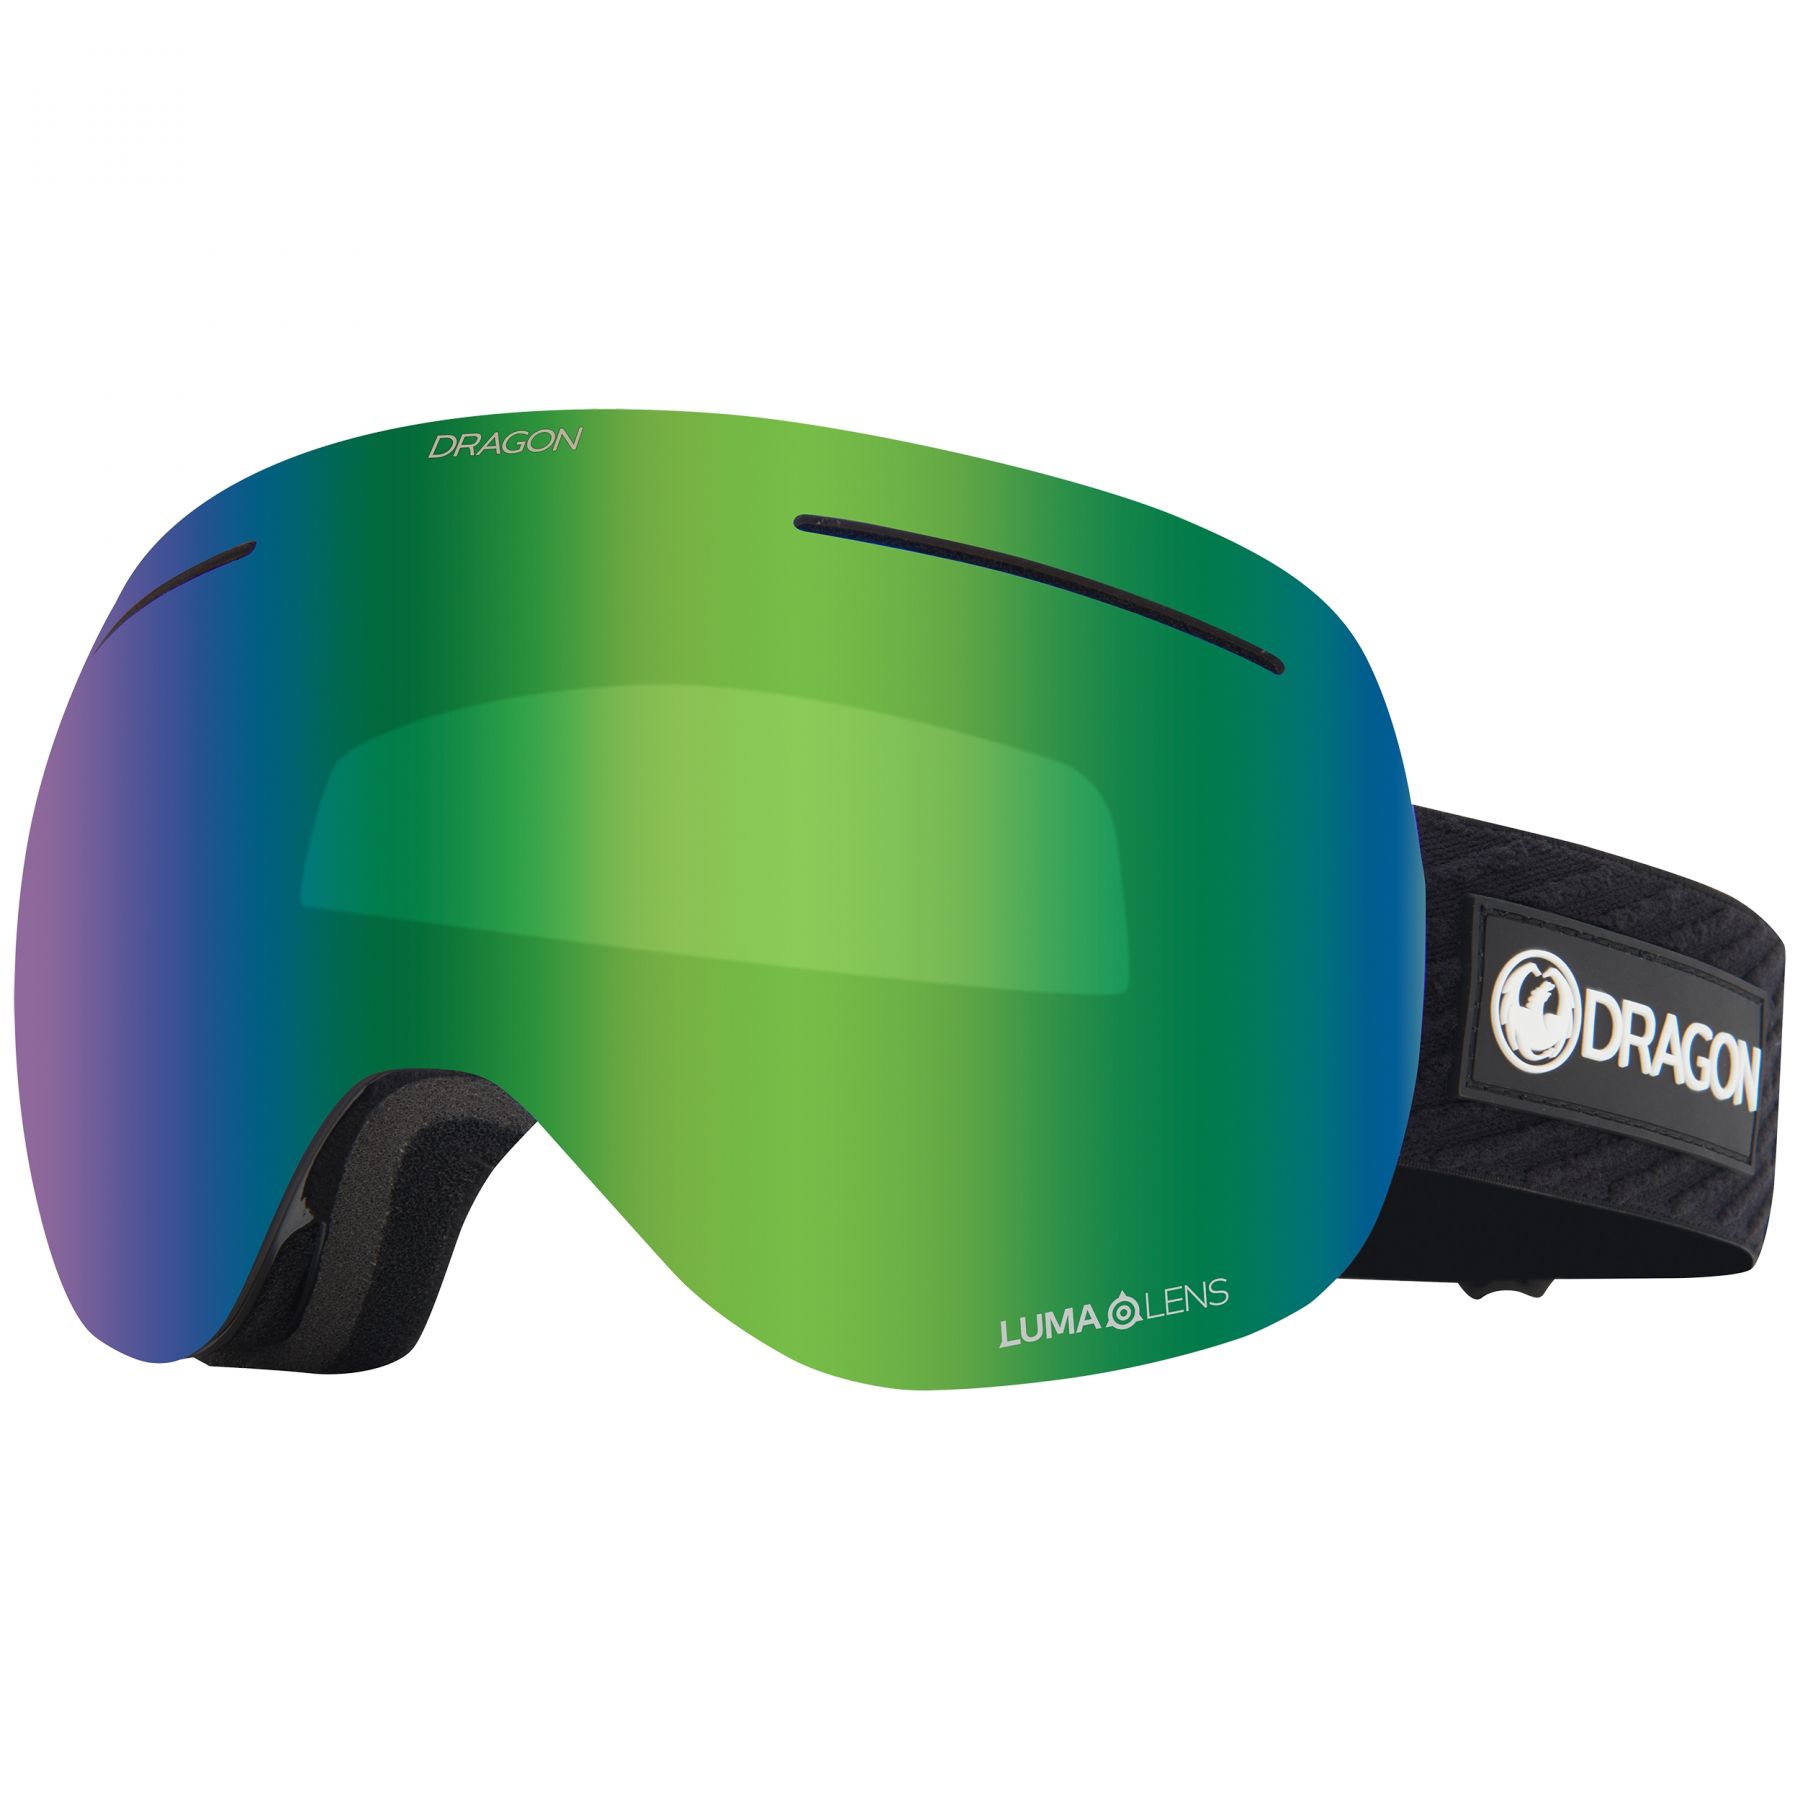 Brug Dragon X1, skibriller, icon green til en forbedret oplevelse